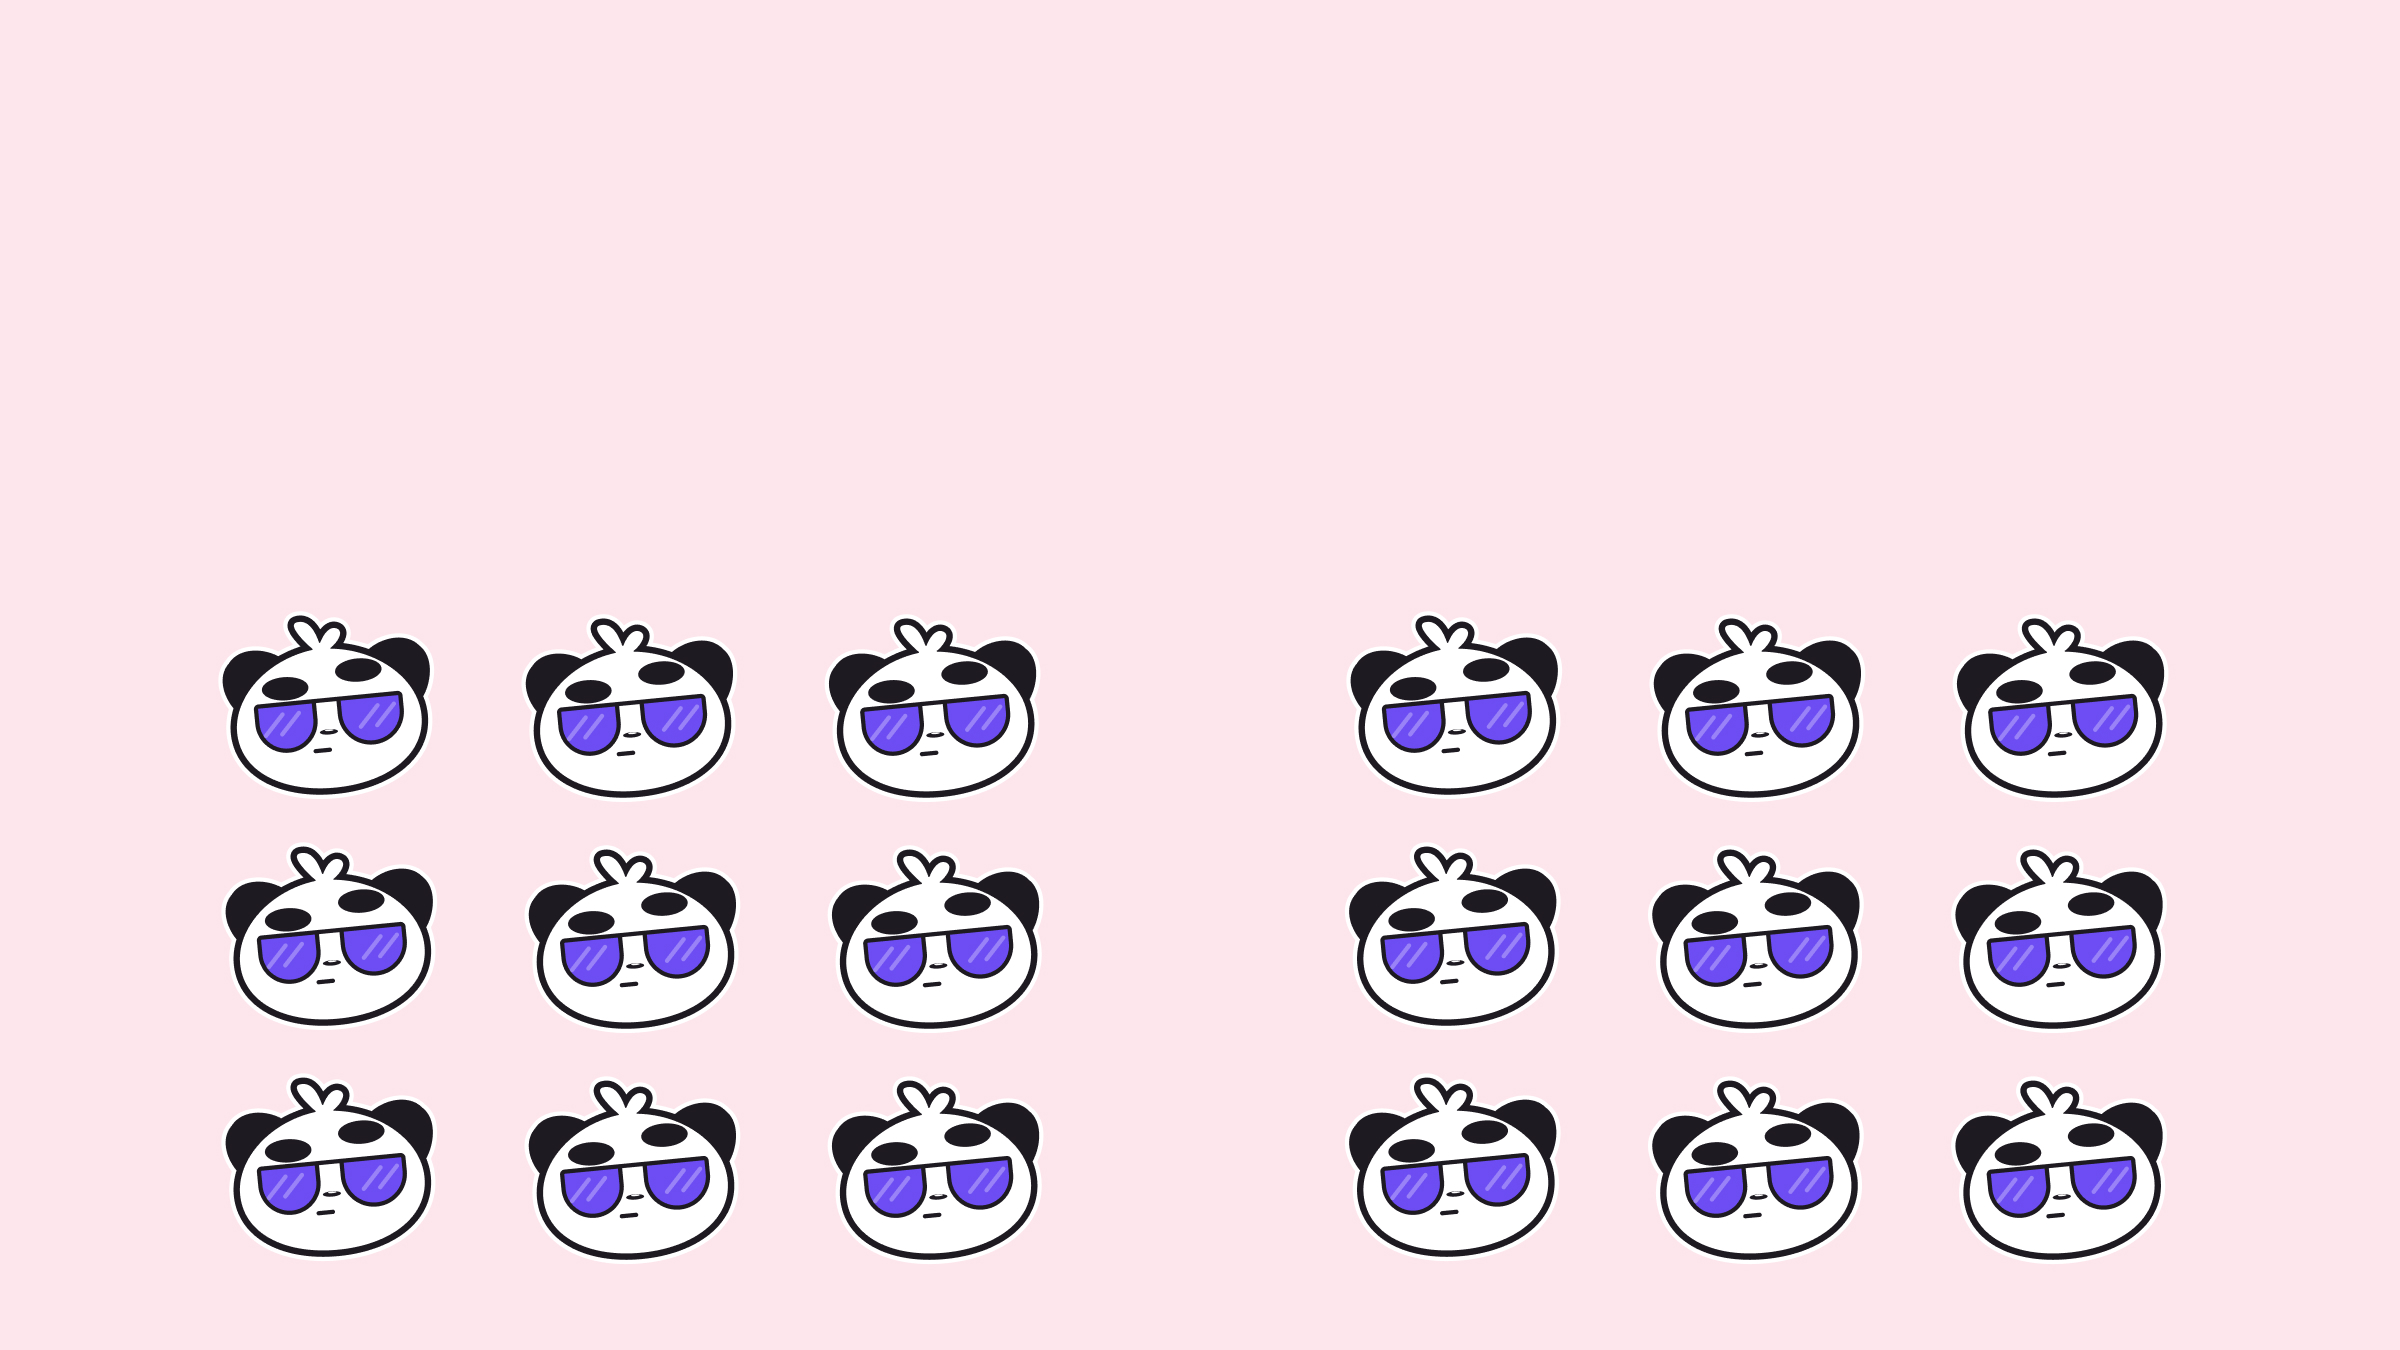 На данном рисунке изображено две группы из векторных панд в фиолетовых очков по 9 панд на одну группу. Между группами есть небольшое расстояния, по краям есть такого же размера отступ. Сверху тоже есть большой отступ, фон пастельного розового цвета.